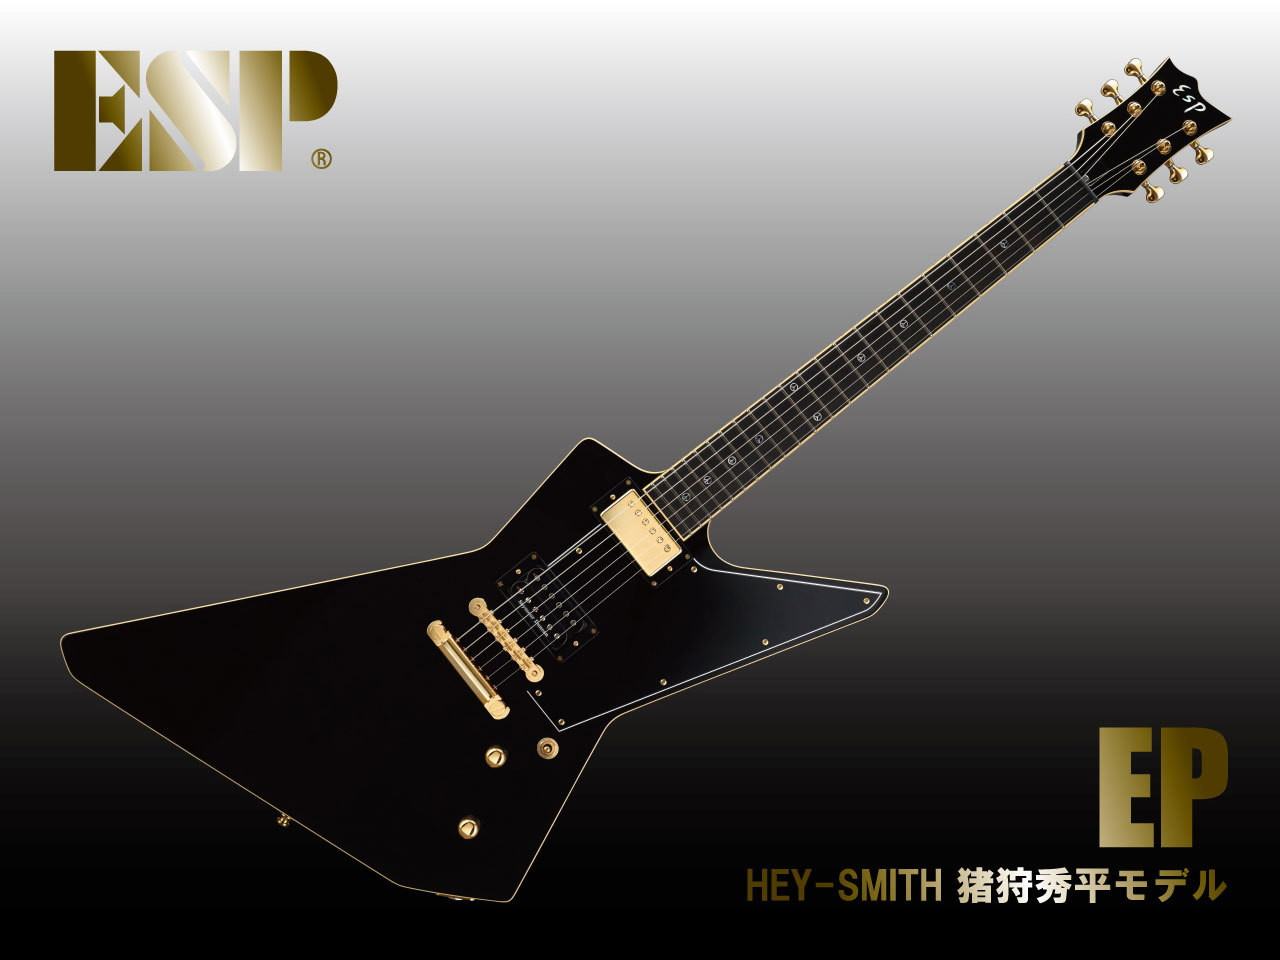 ESP EP (Black) / HEY-SMITH 猪狩秀平モデル（新品/送料無料）【楽器 